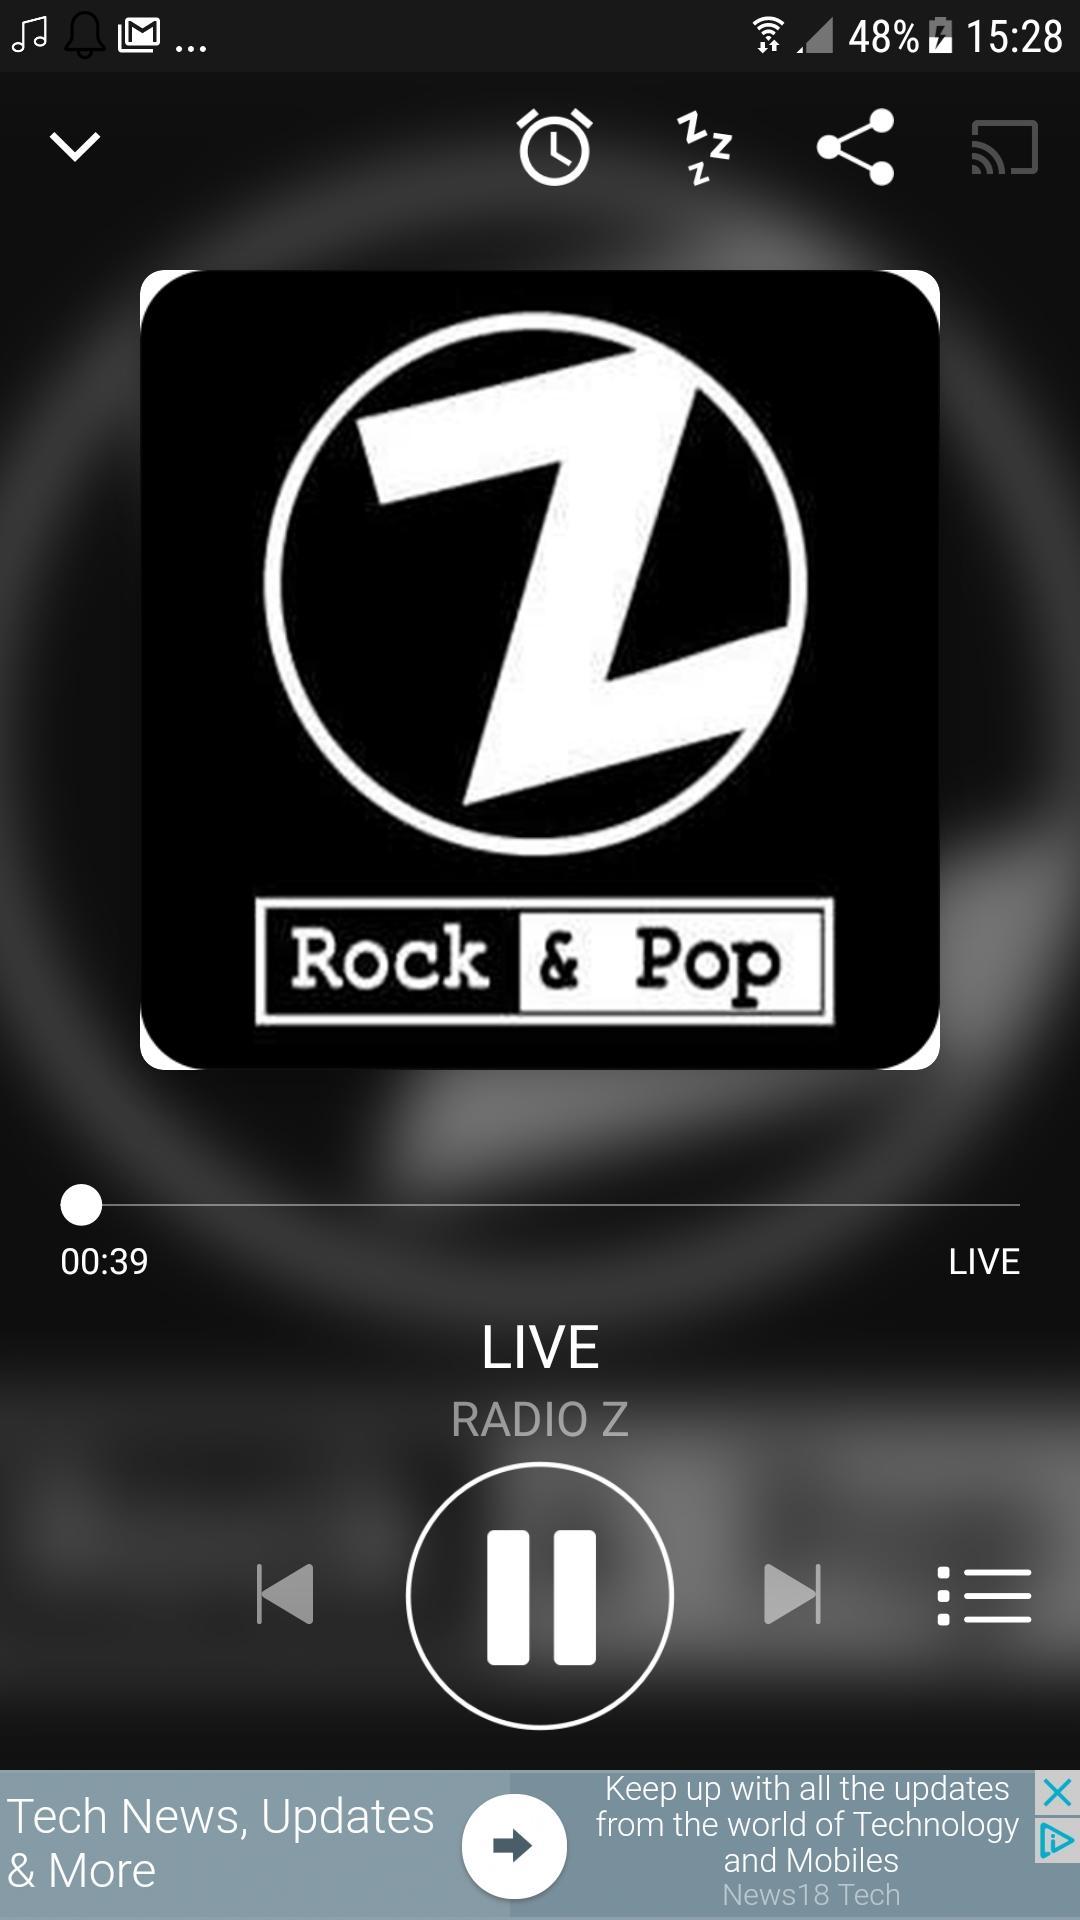 Radio Z Rock & Pop APK voor Android Download